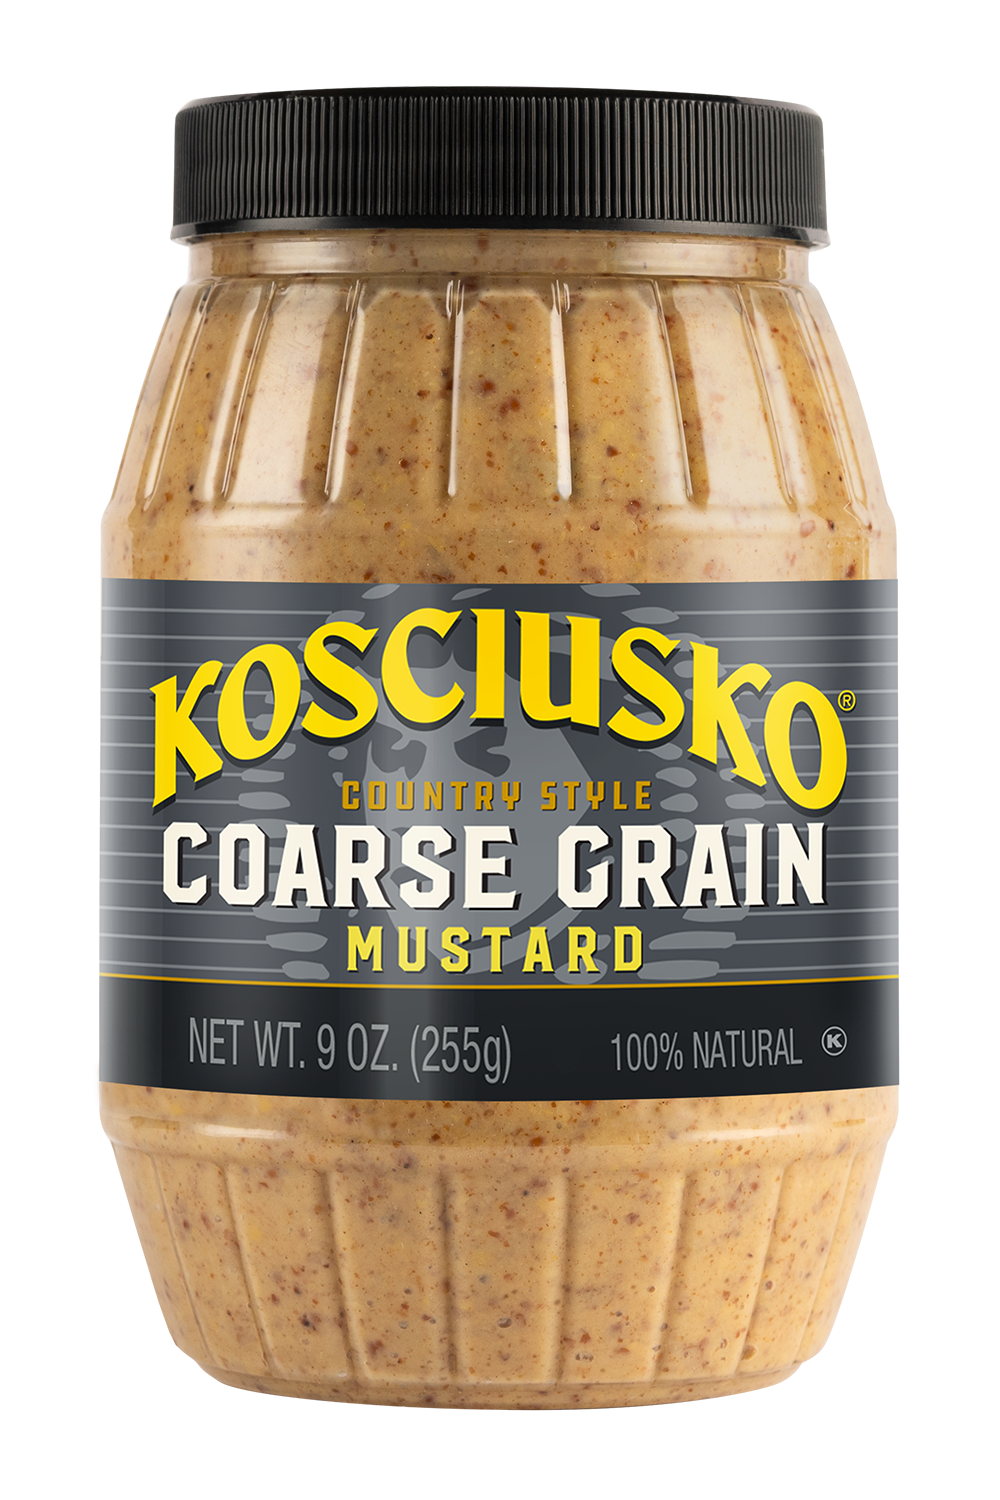 Kosciusko Coarse Ground Mustard bottle